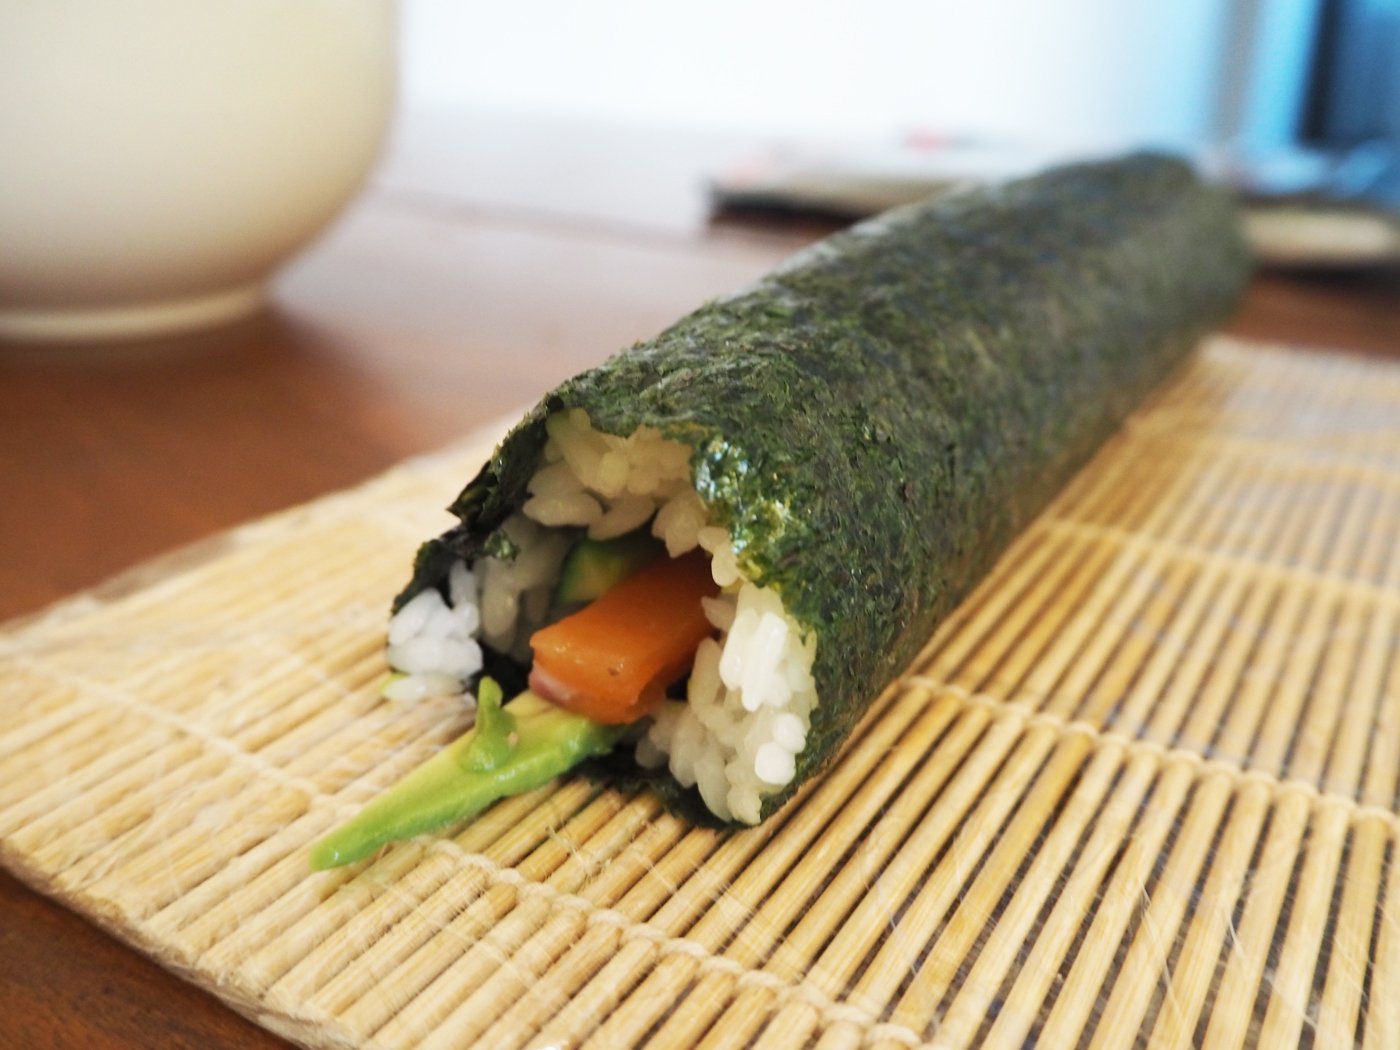 Sushi making at home